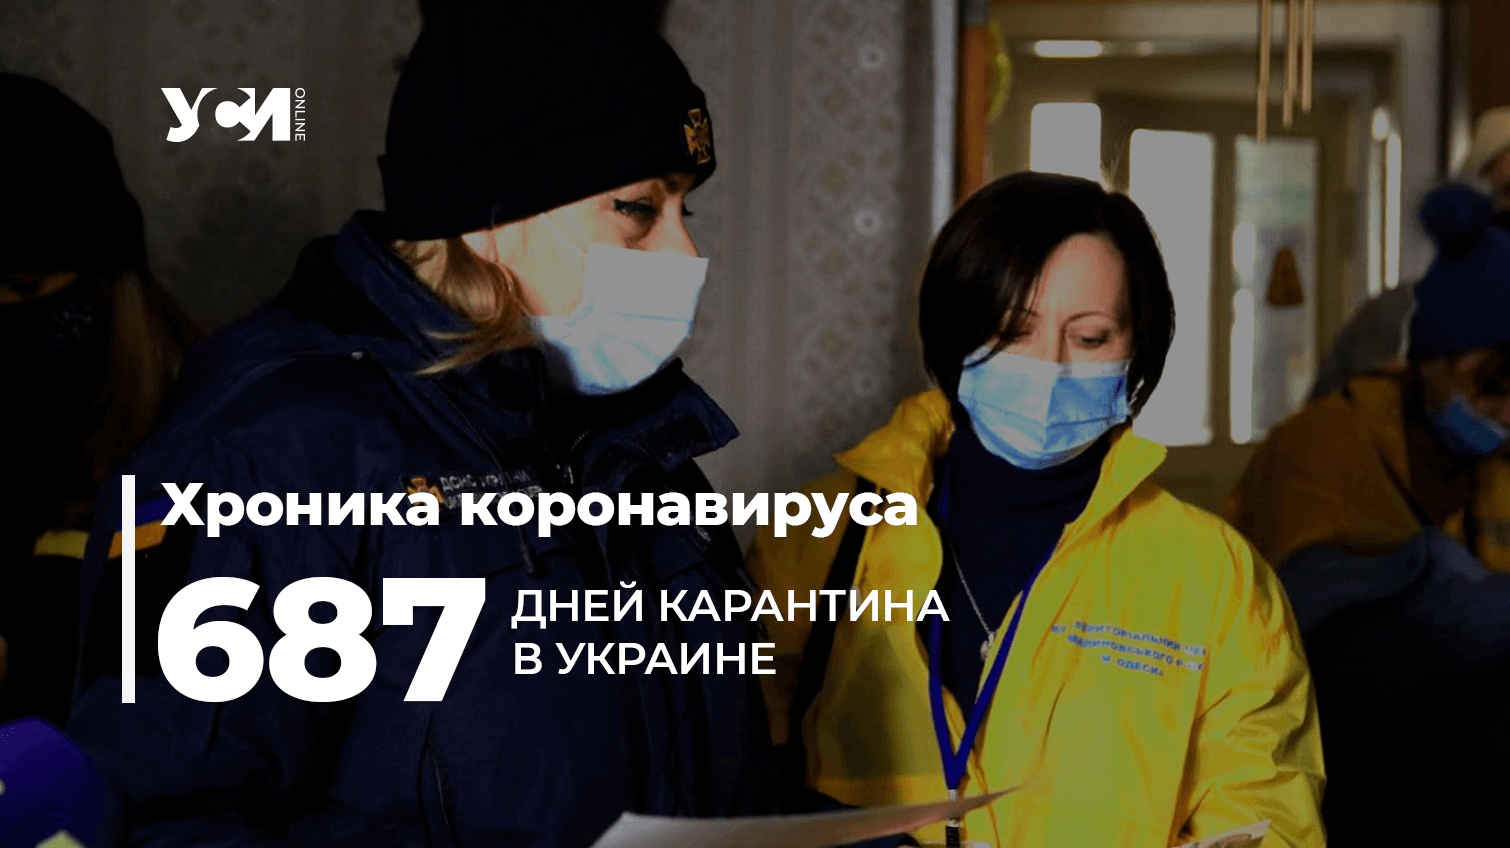 Пандемия: в Одесском регионе – 1 319 новых заболевших «фото»